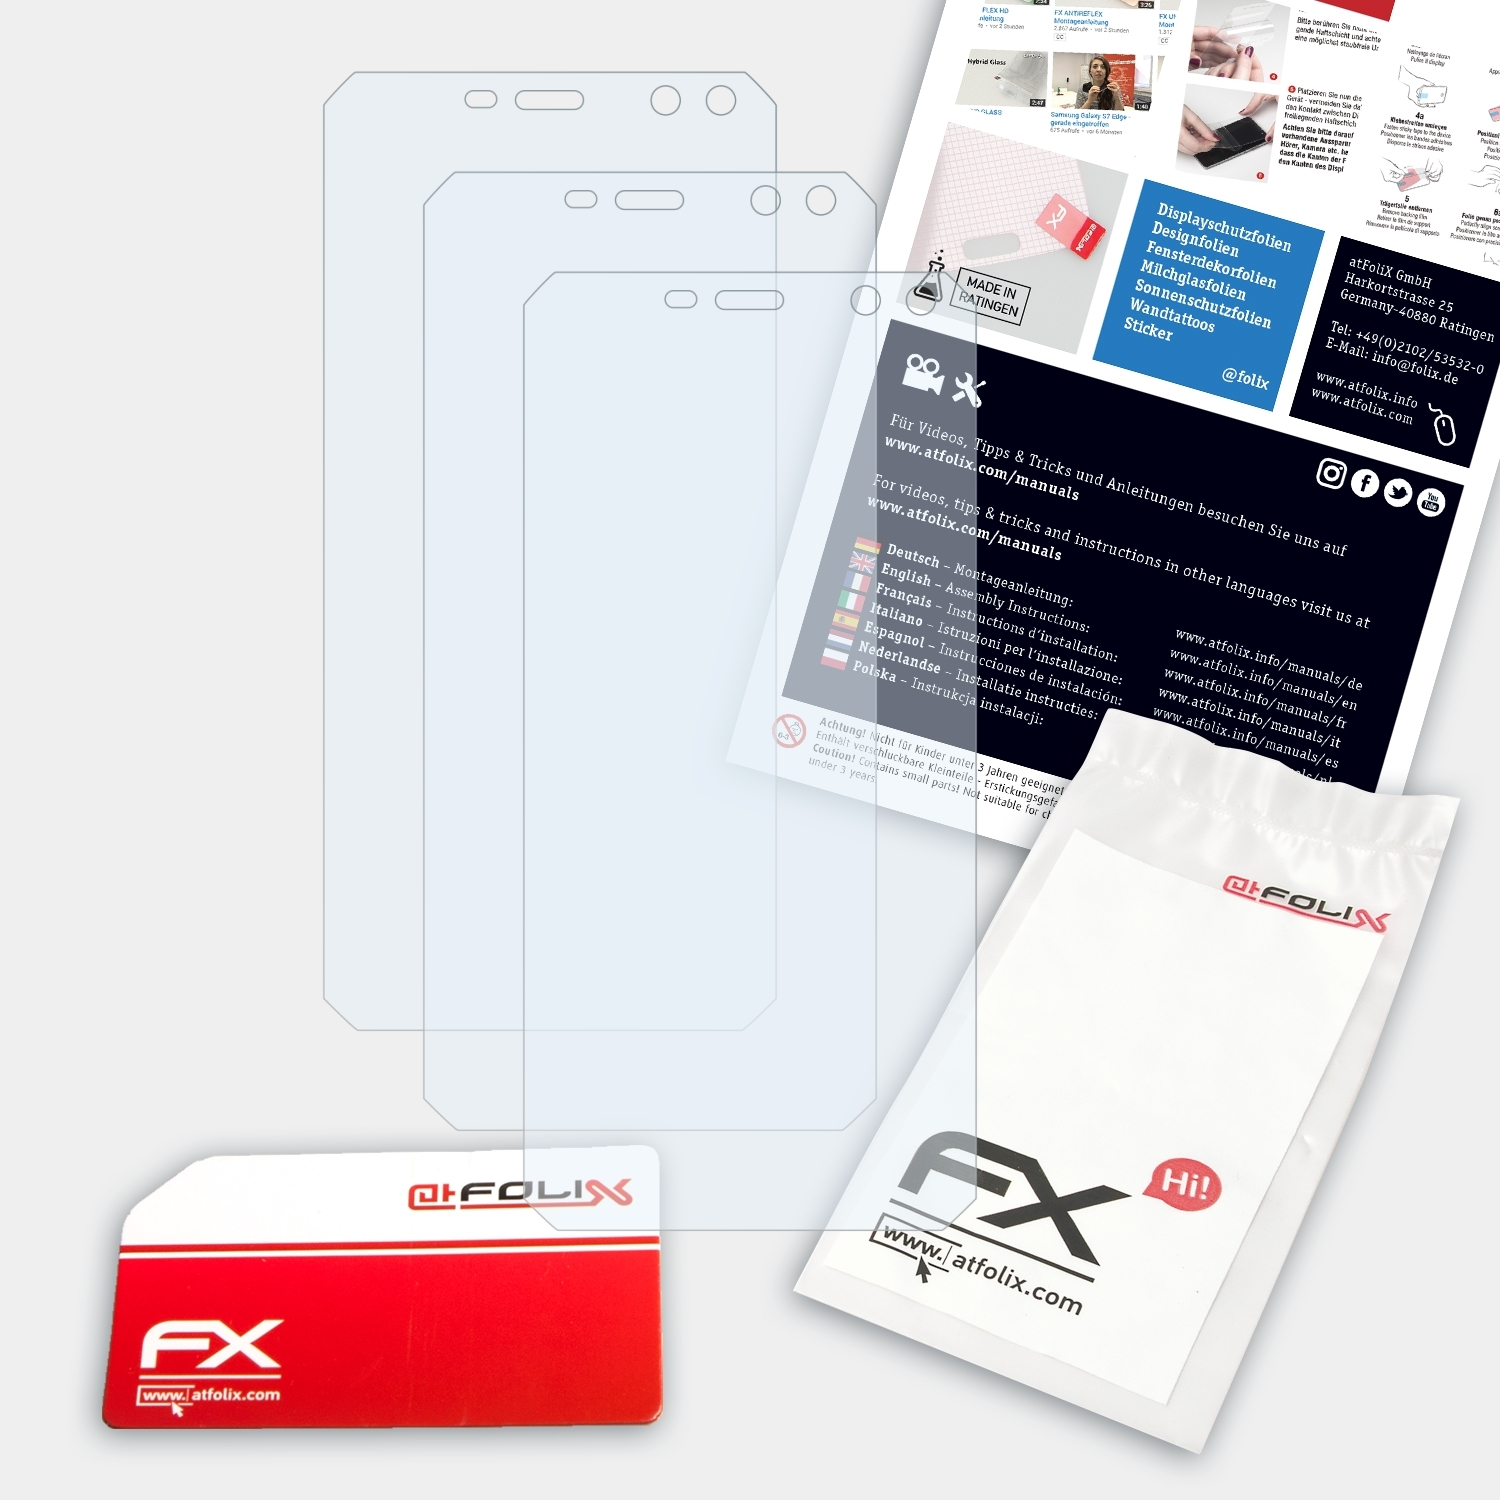 ATFOLIX 3x FX-Clear Displayschutz(für Nomu M6)